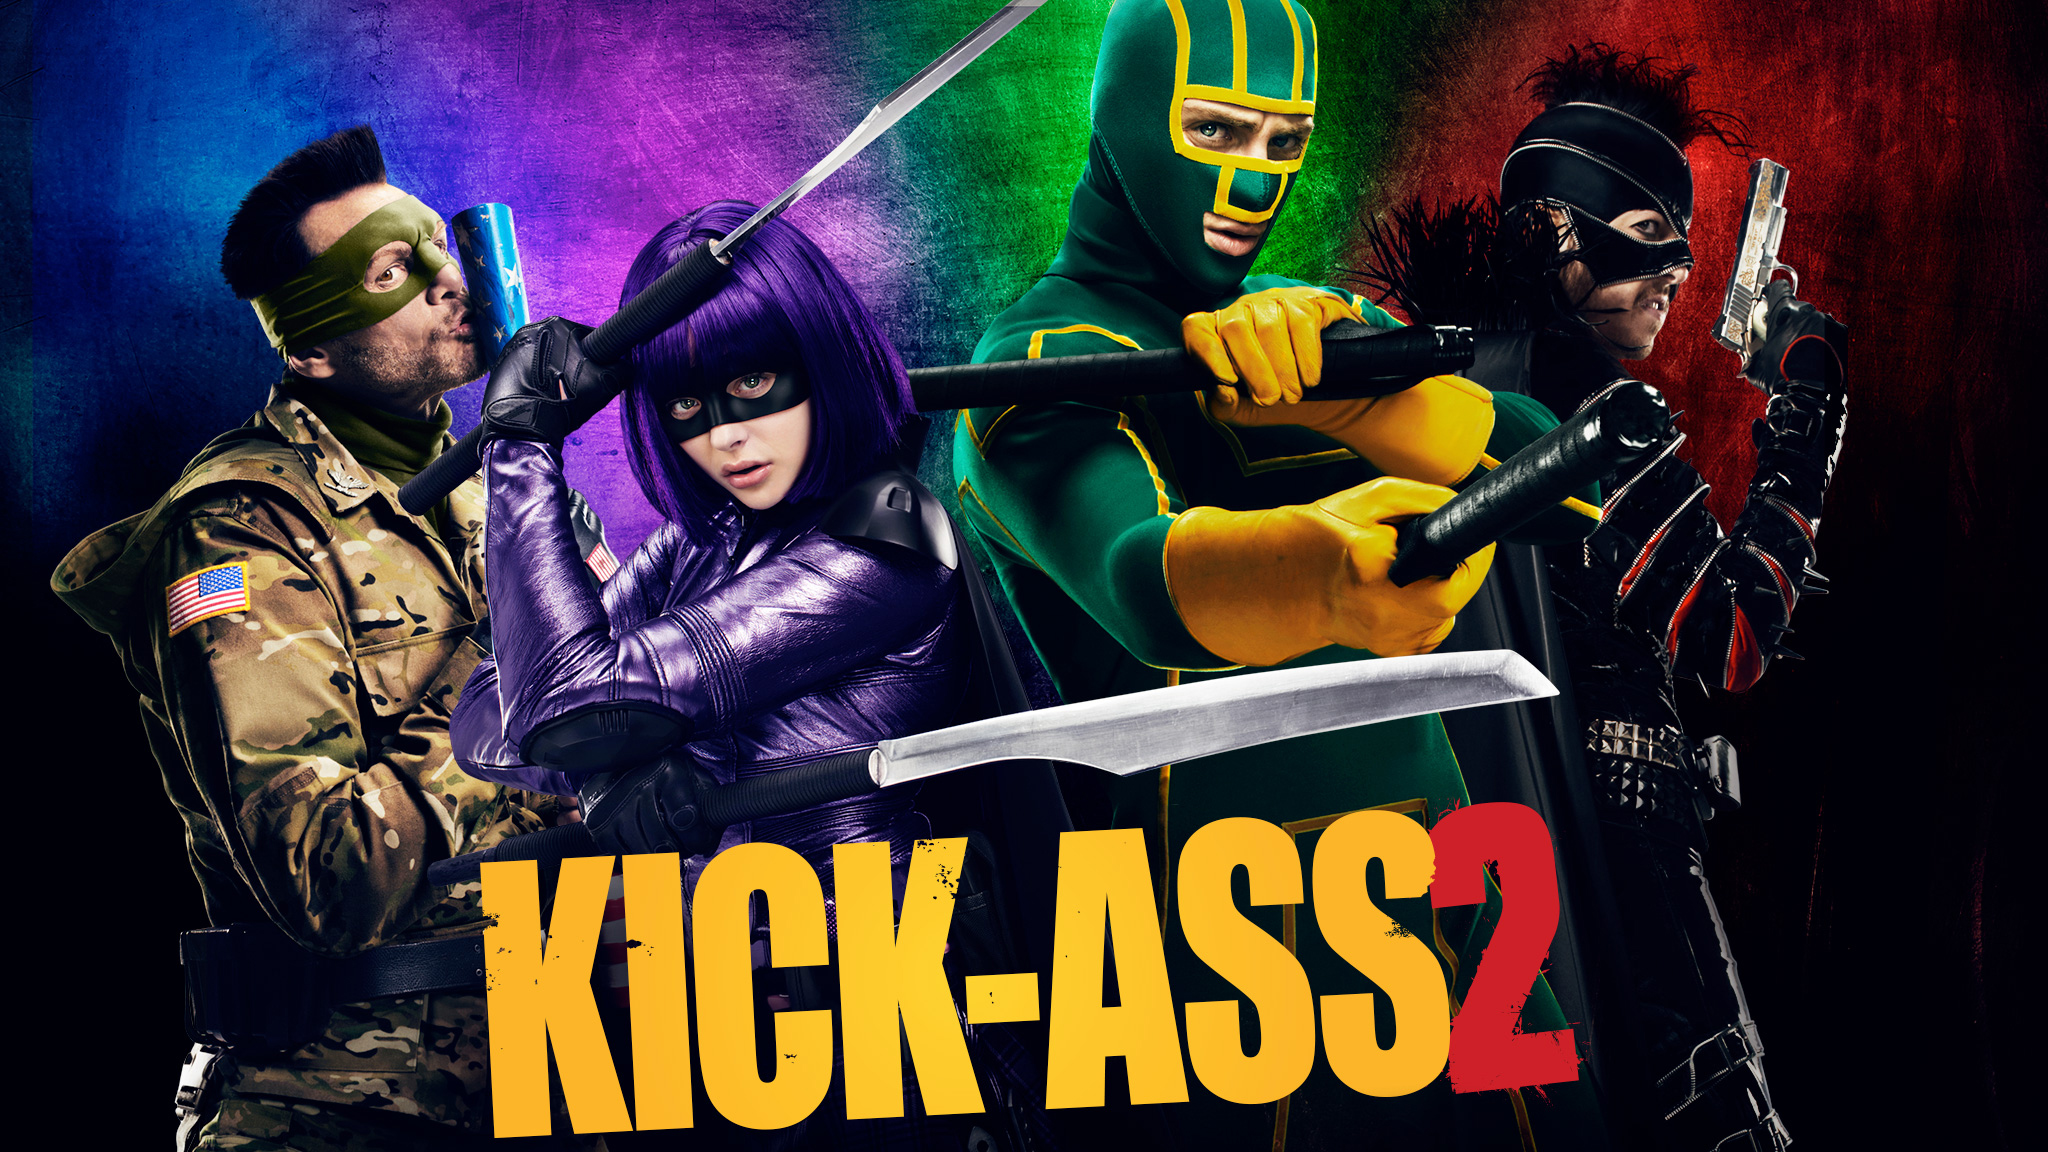 movie, kick ass 2, kick ass